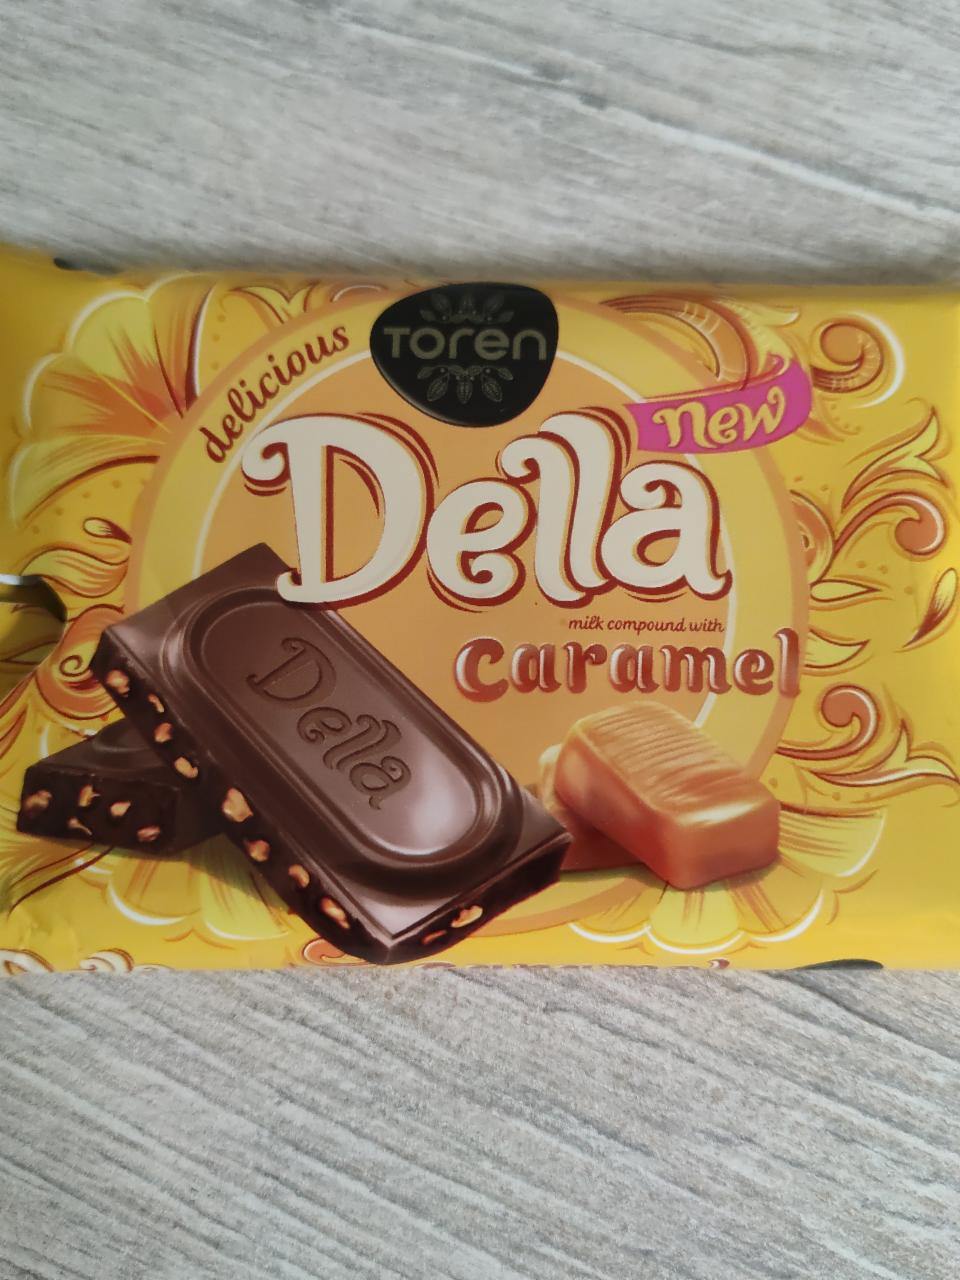 Фото - шоколад с карамелью Della Toren